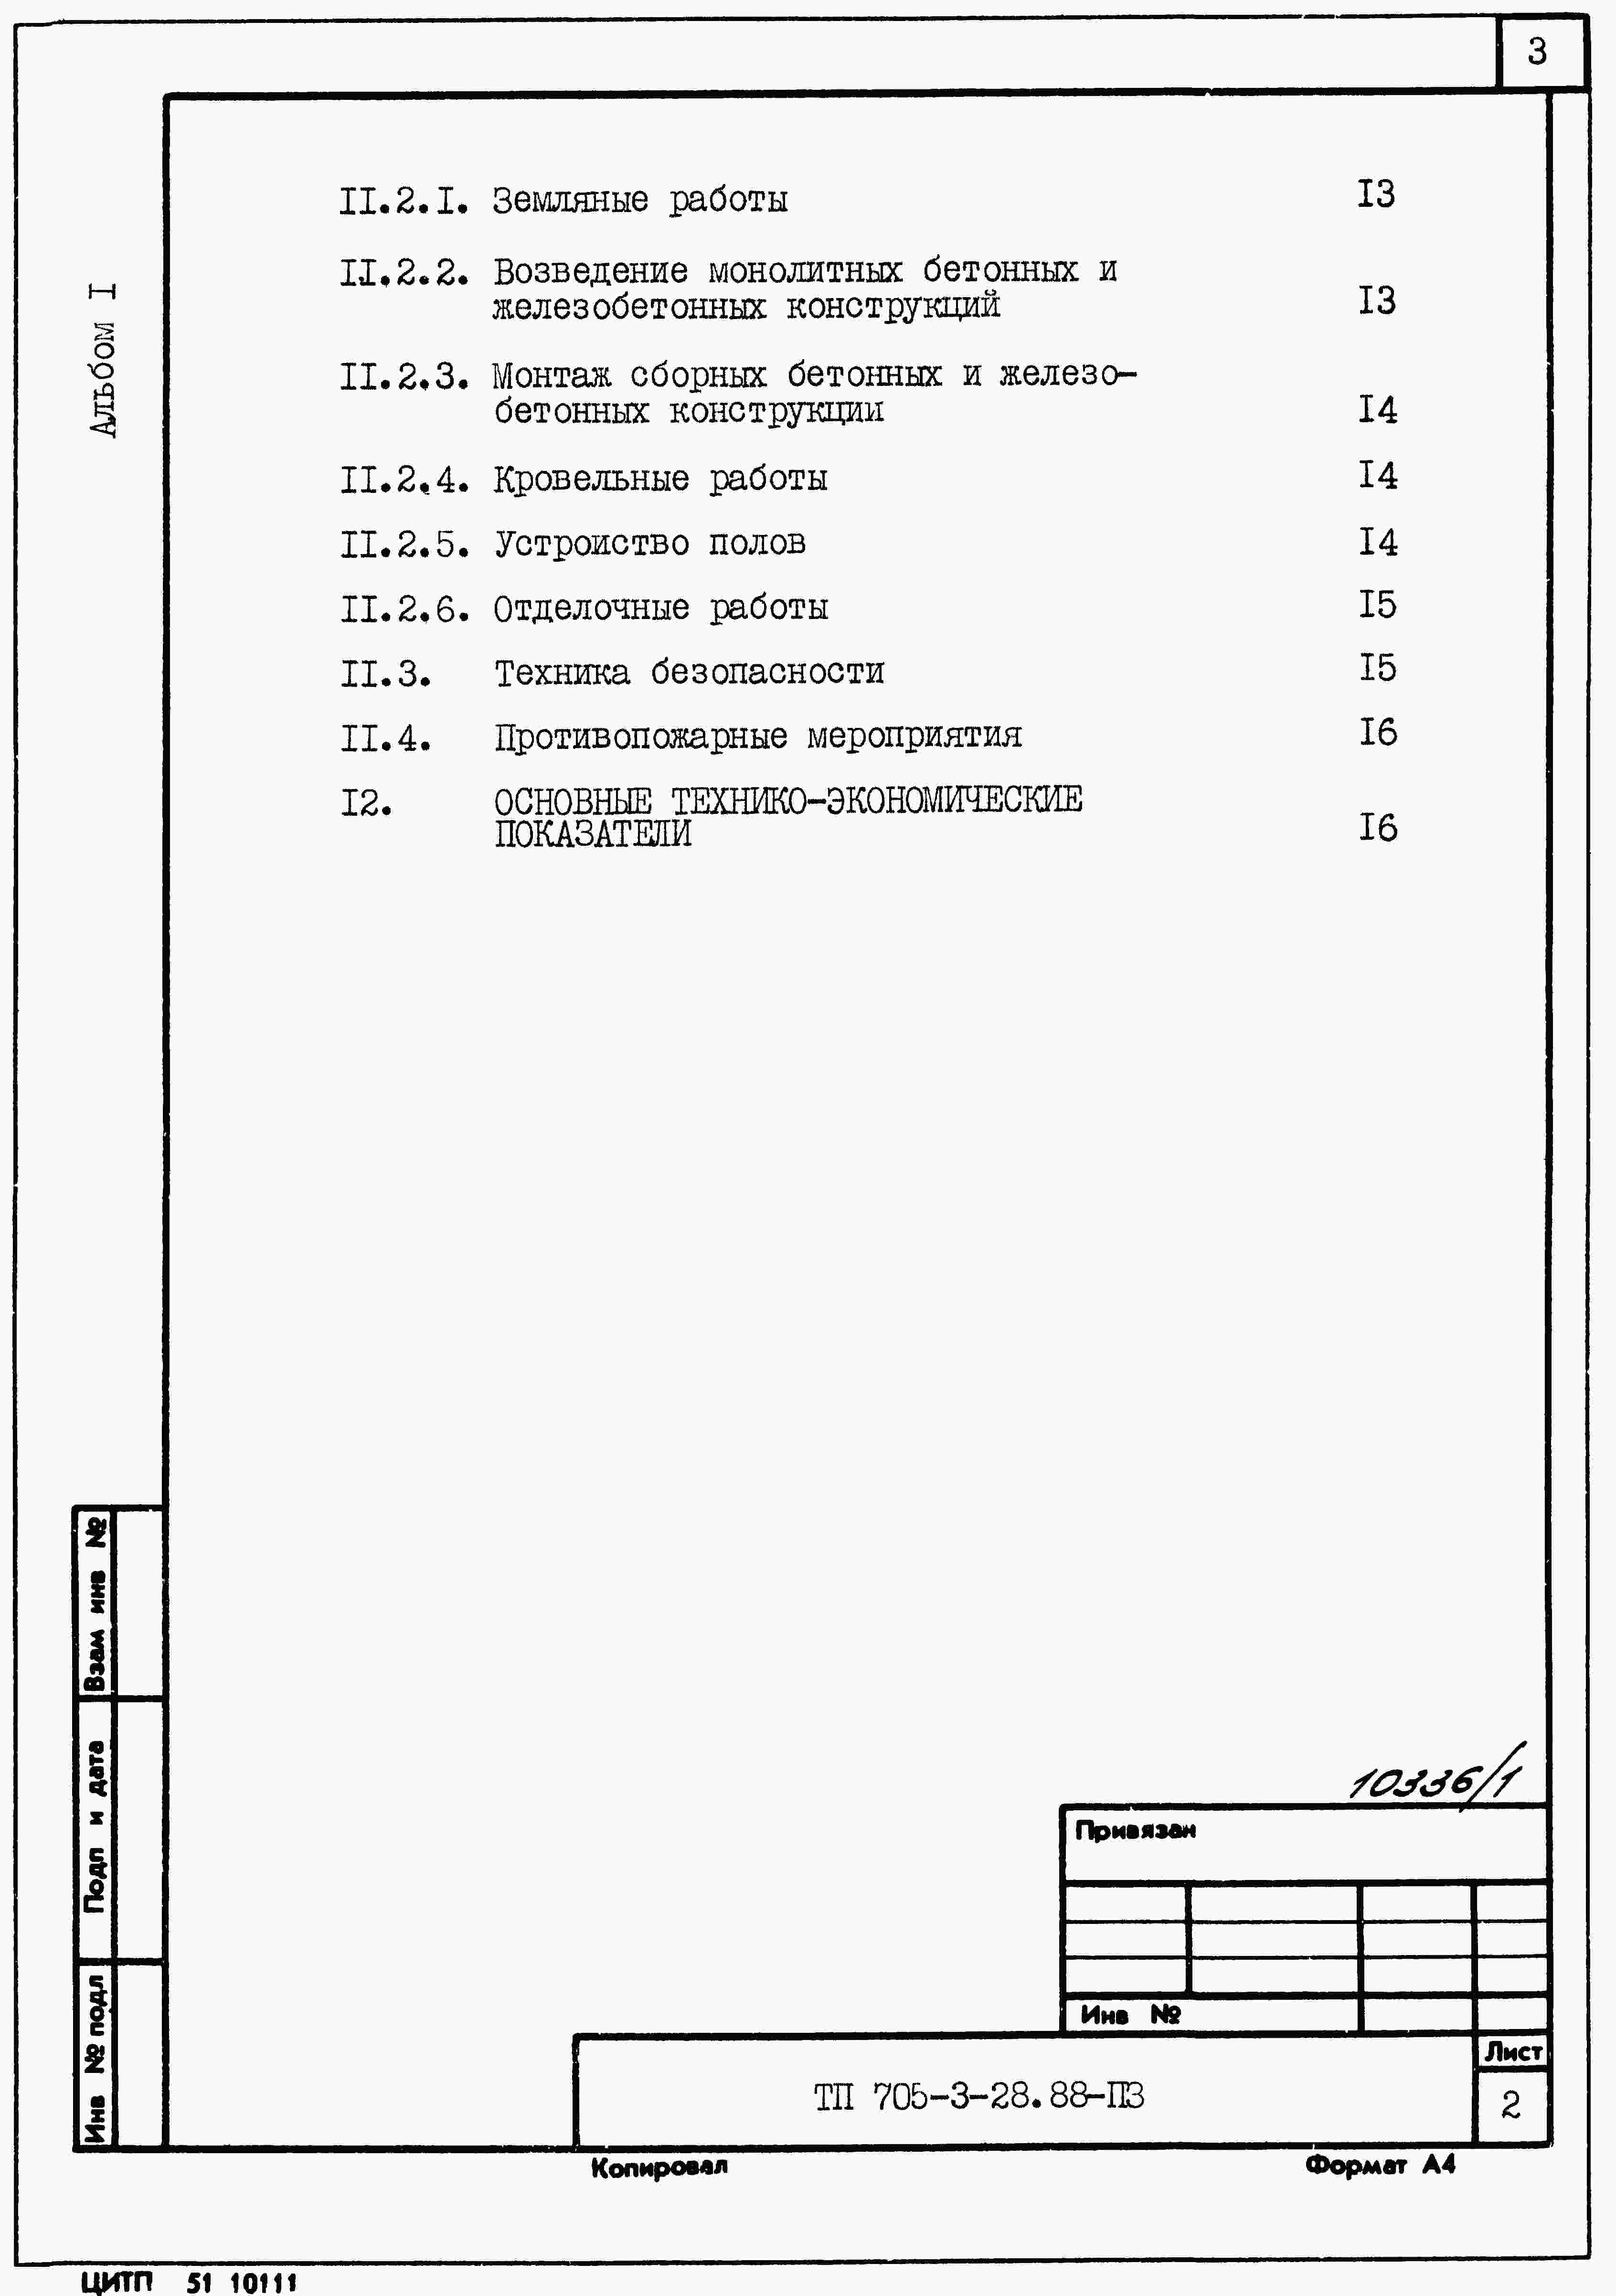 Состав альбома Типовой проект 705-3-36.88Альбом 1 Применен из ТП 705-3-28.88 Общая пояснительная записка. 